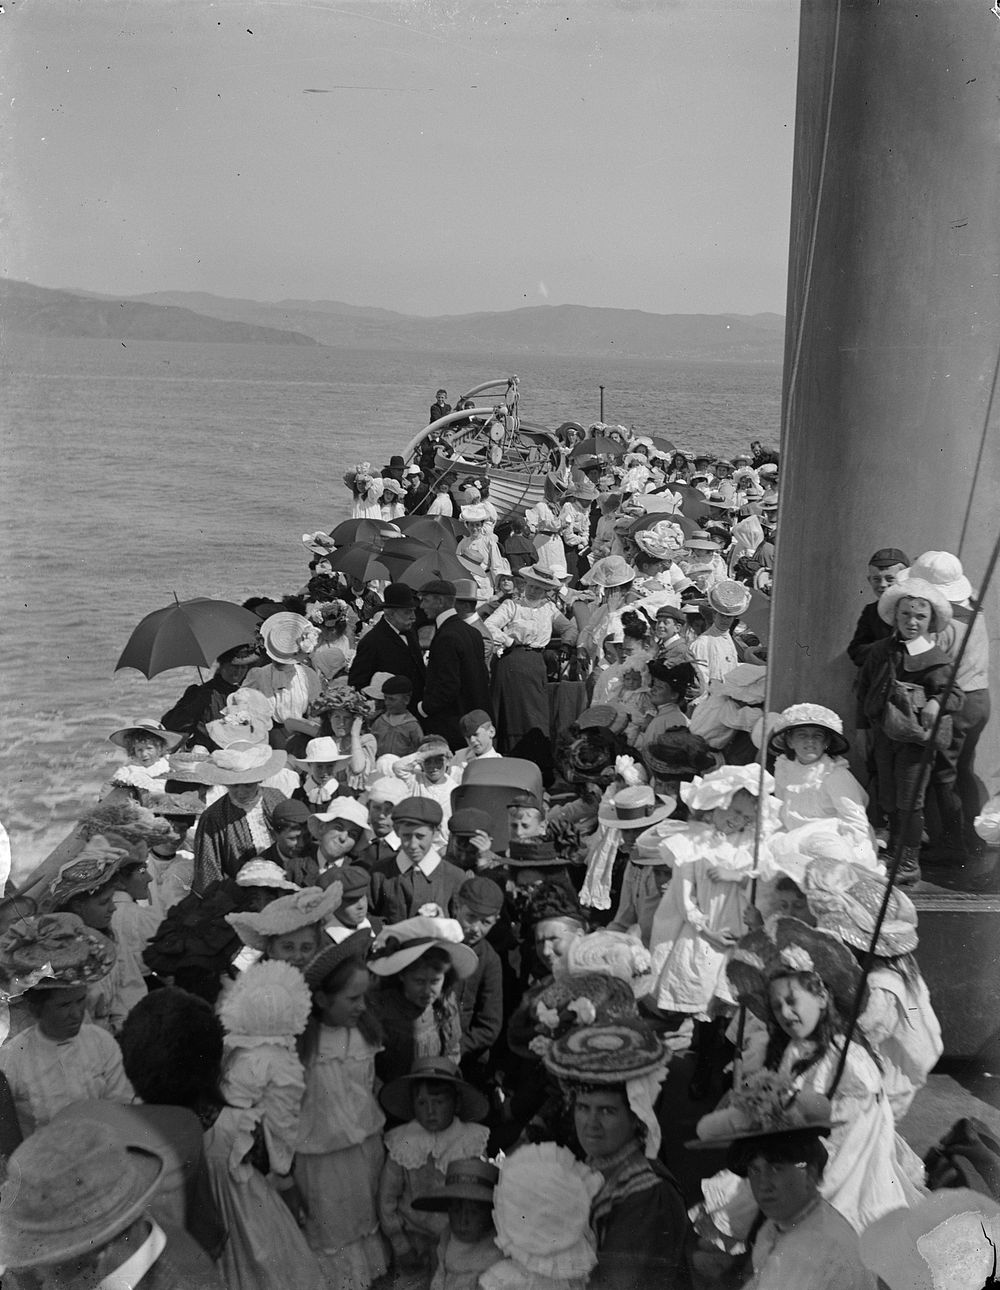 Crowded sea trip (circa 1908) by Fred Brockett.